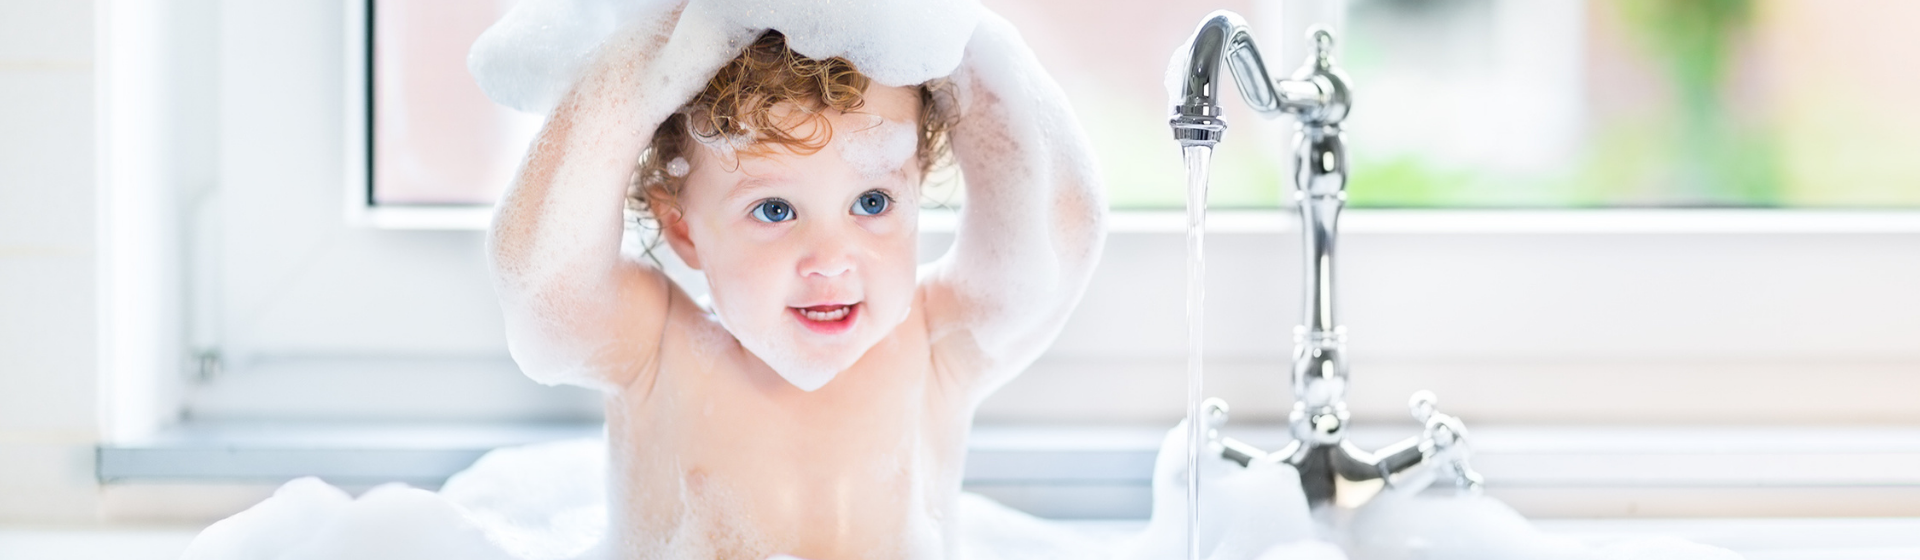 Banheira de bebê: como escolher a melhor banheira de bebê?